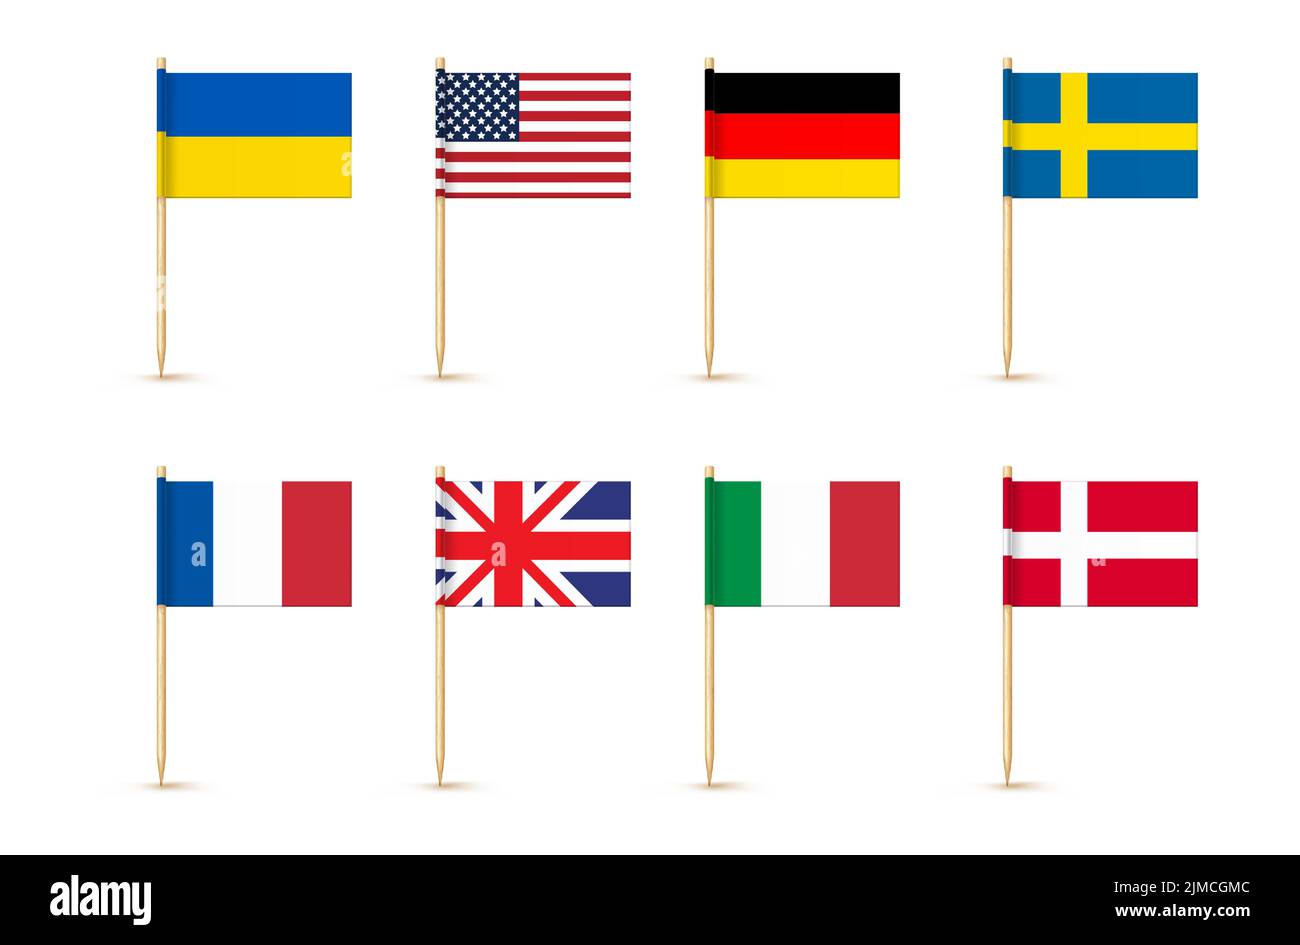 File:European flag in Karlskrona 2011.jpg - Wikimedia Commons